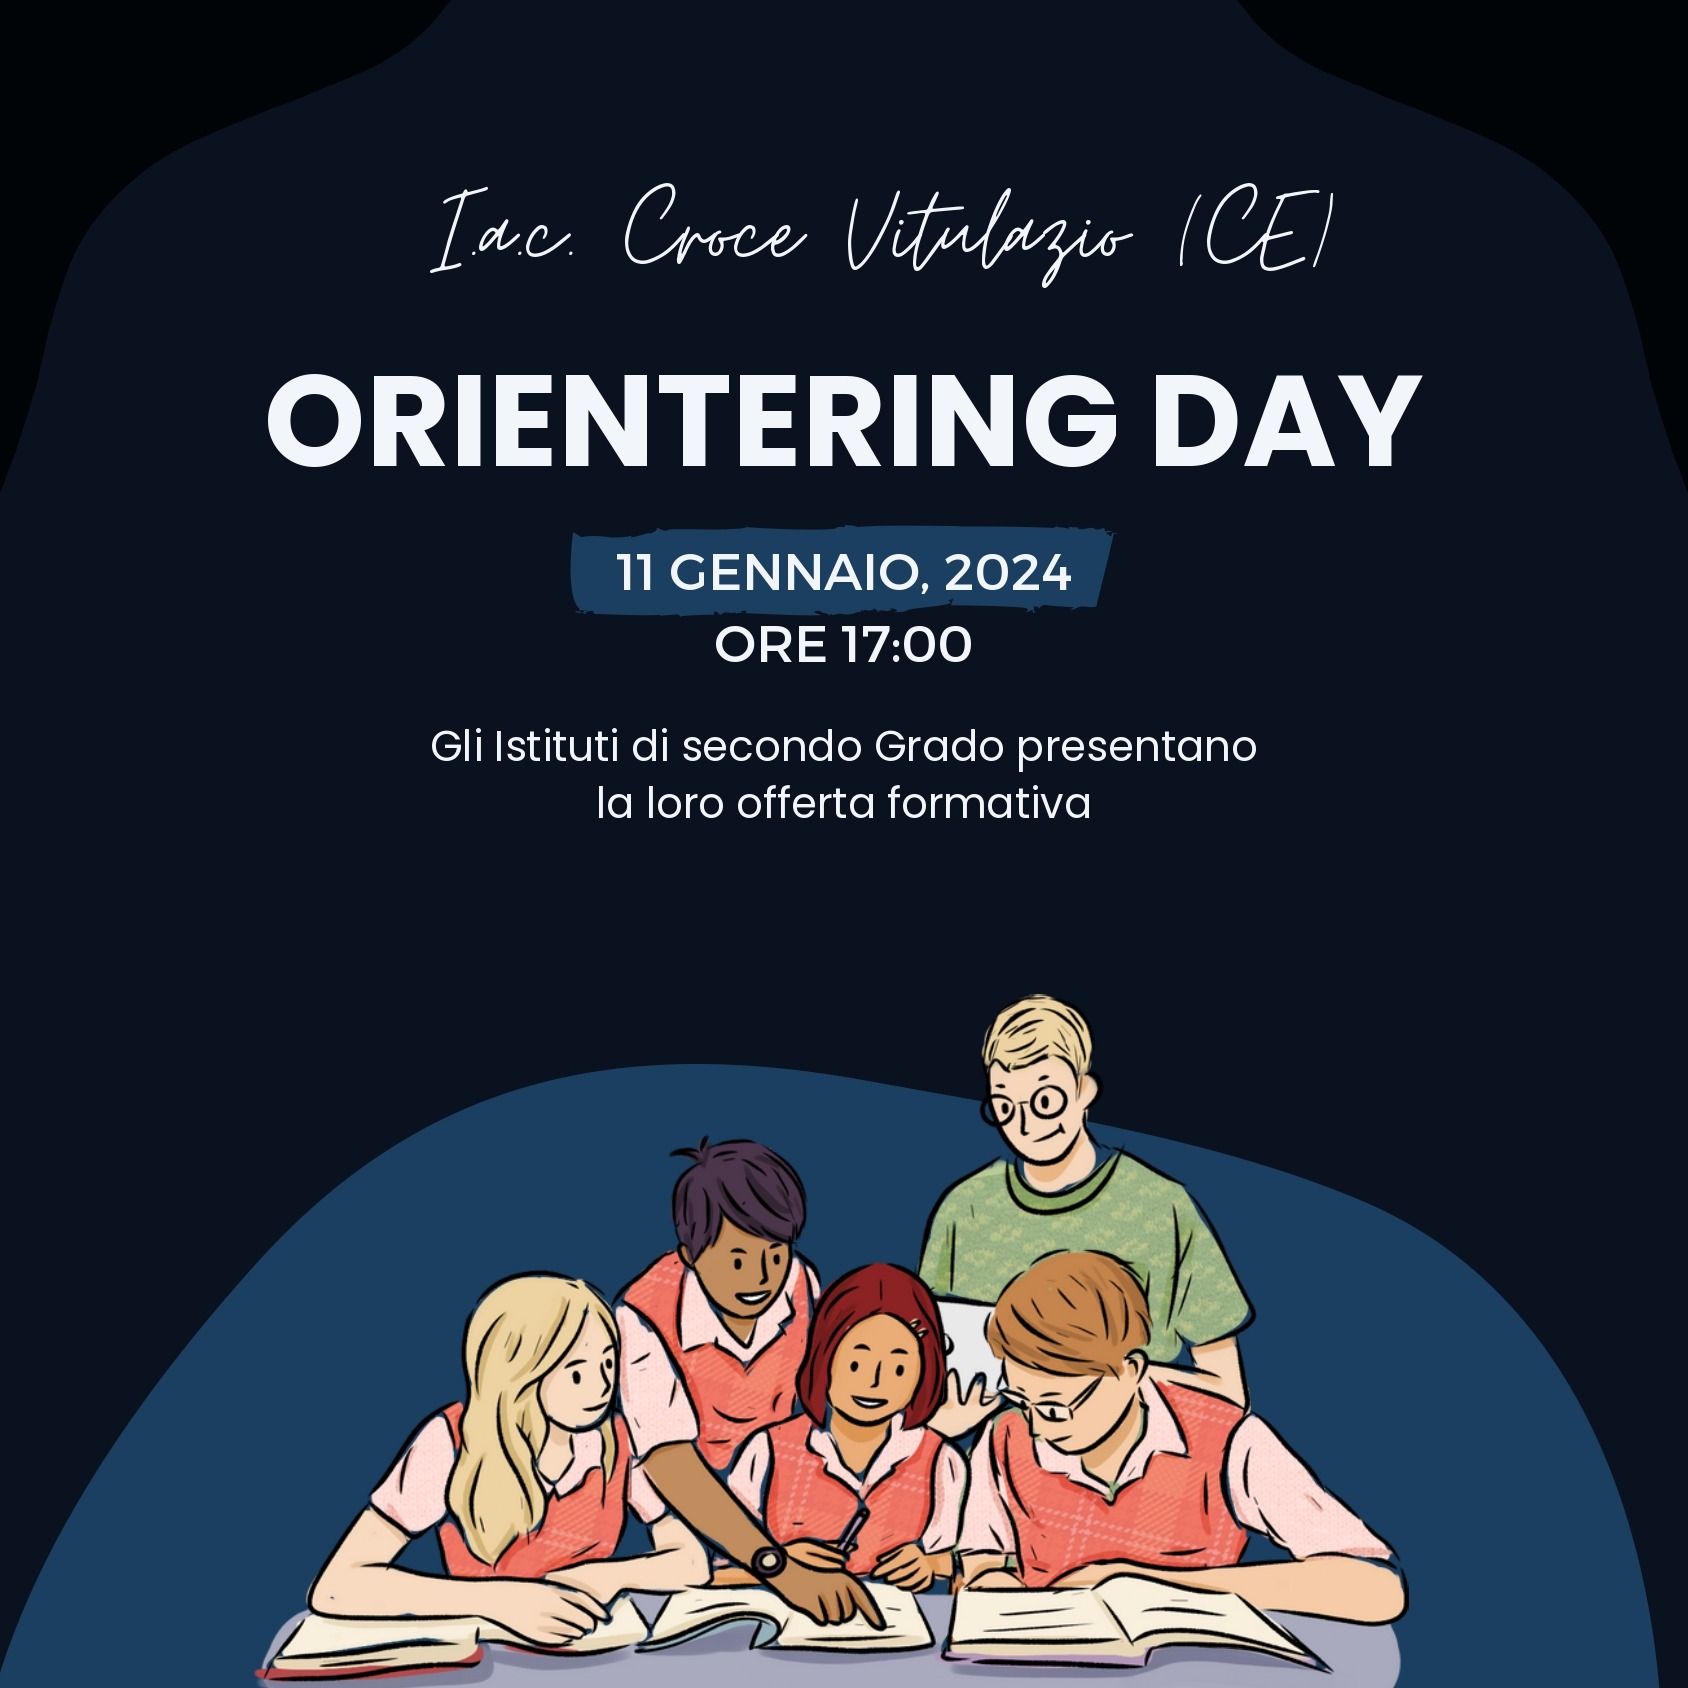 Orientering Day – 11 Gennaio 2024 dalle ore 17:00 alle ore 19:00